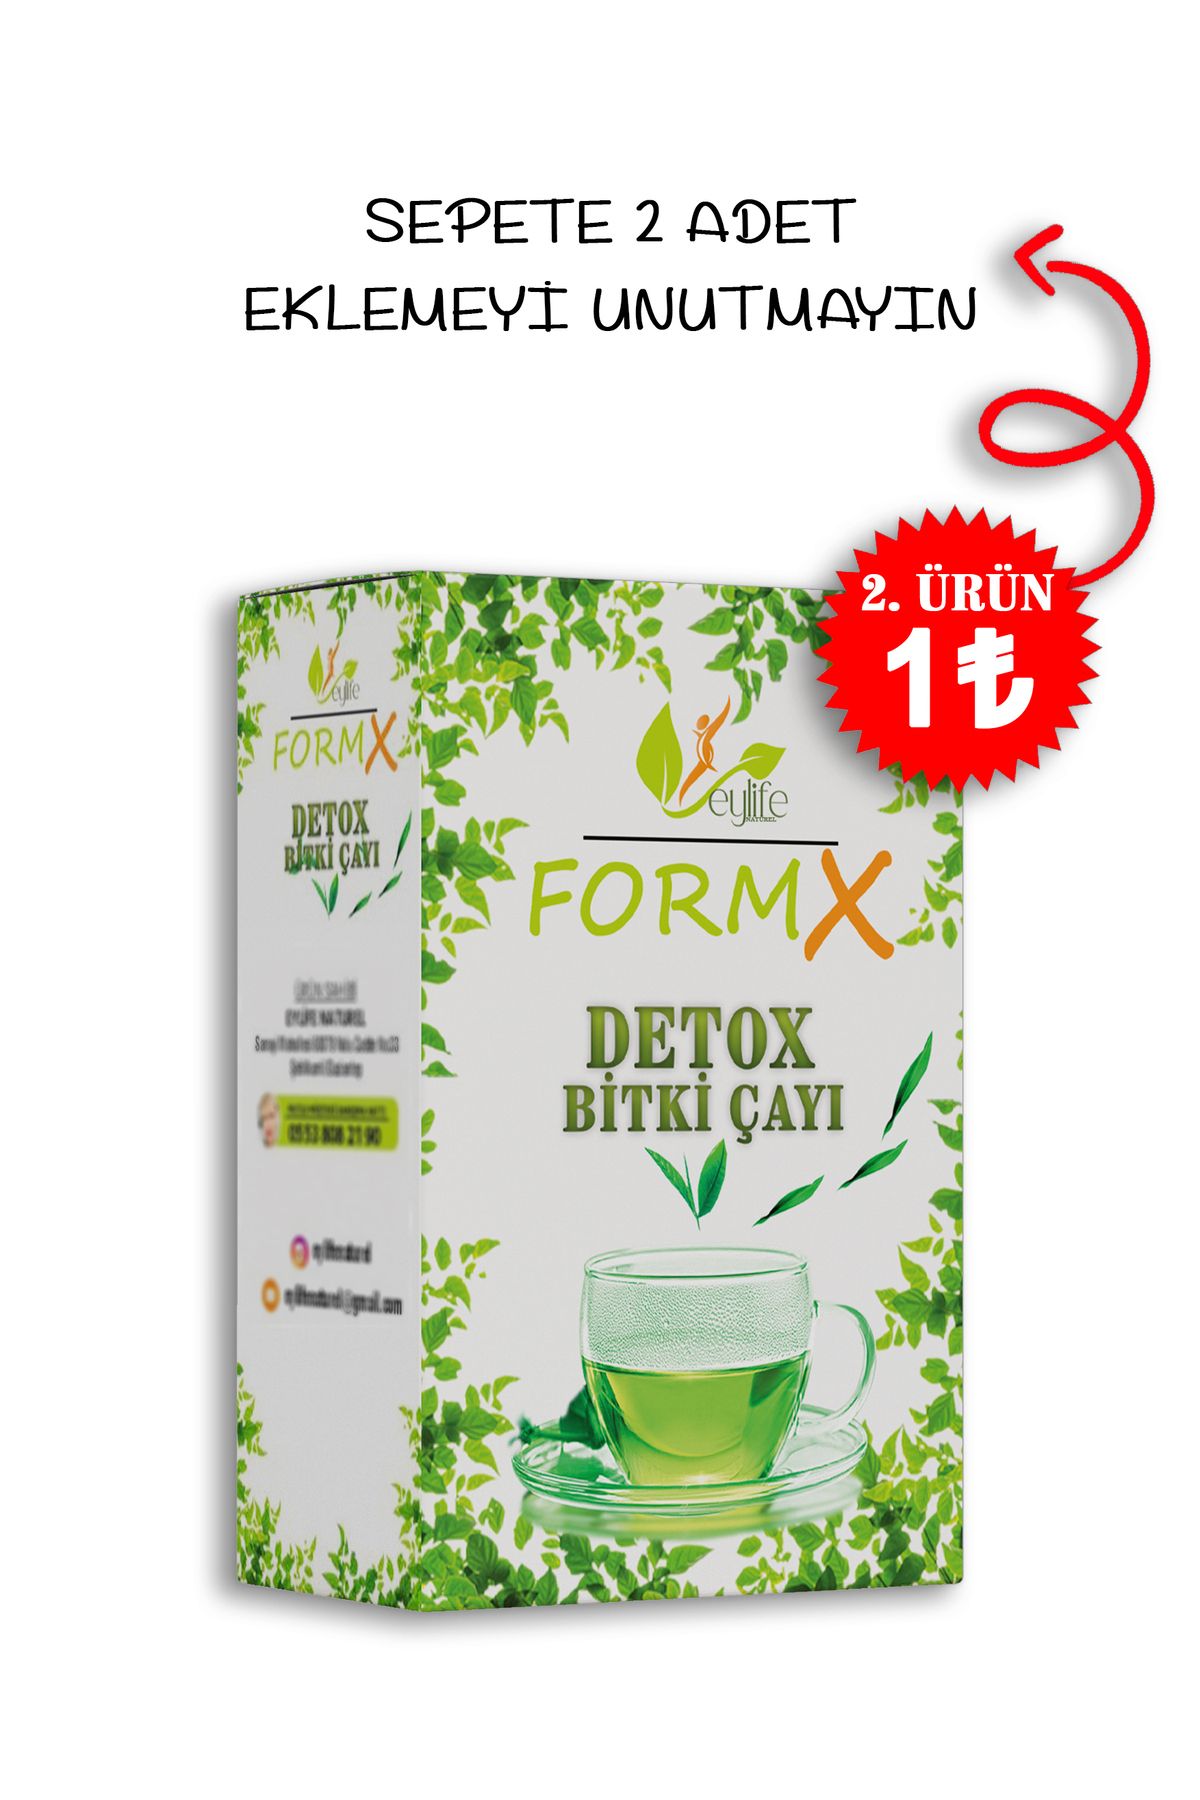 EYLİFE Formx Zayıflamaya Yardımcı Bitkisel Detox Çayı